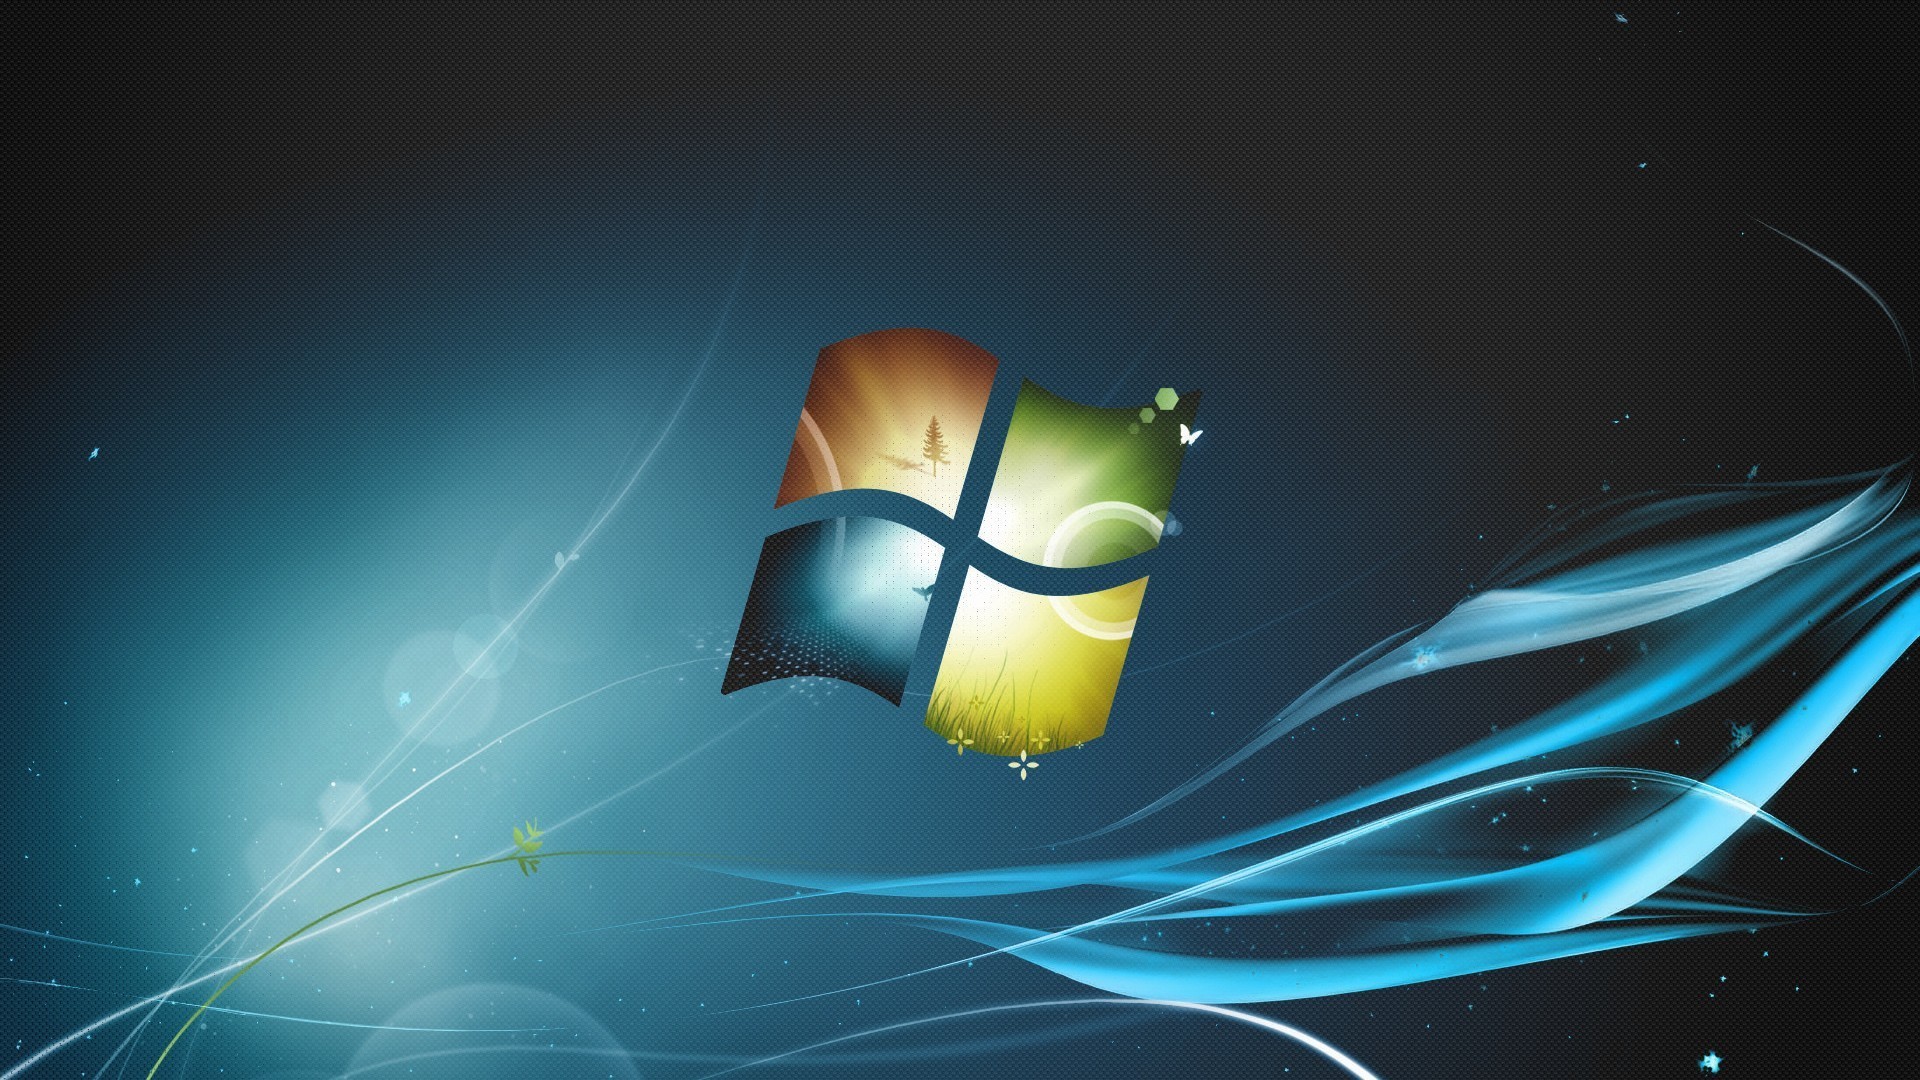 Microsoft Windows Background Image